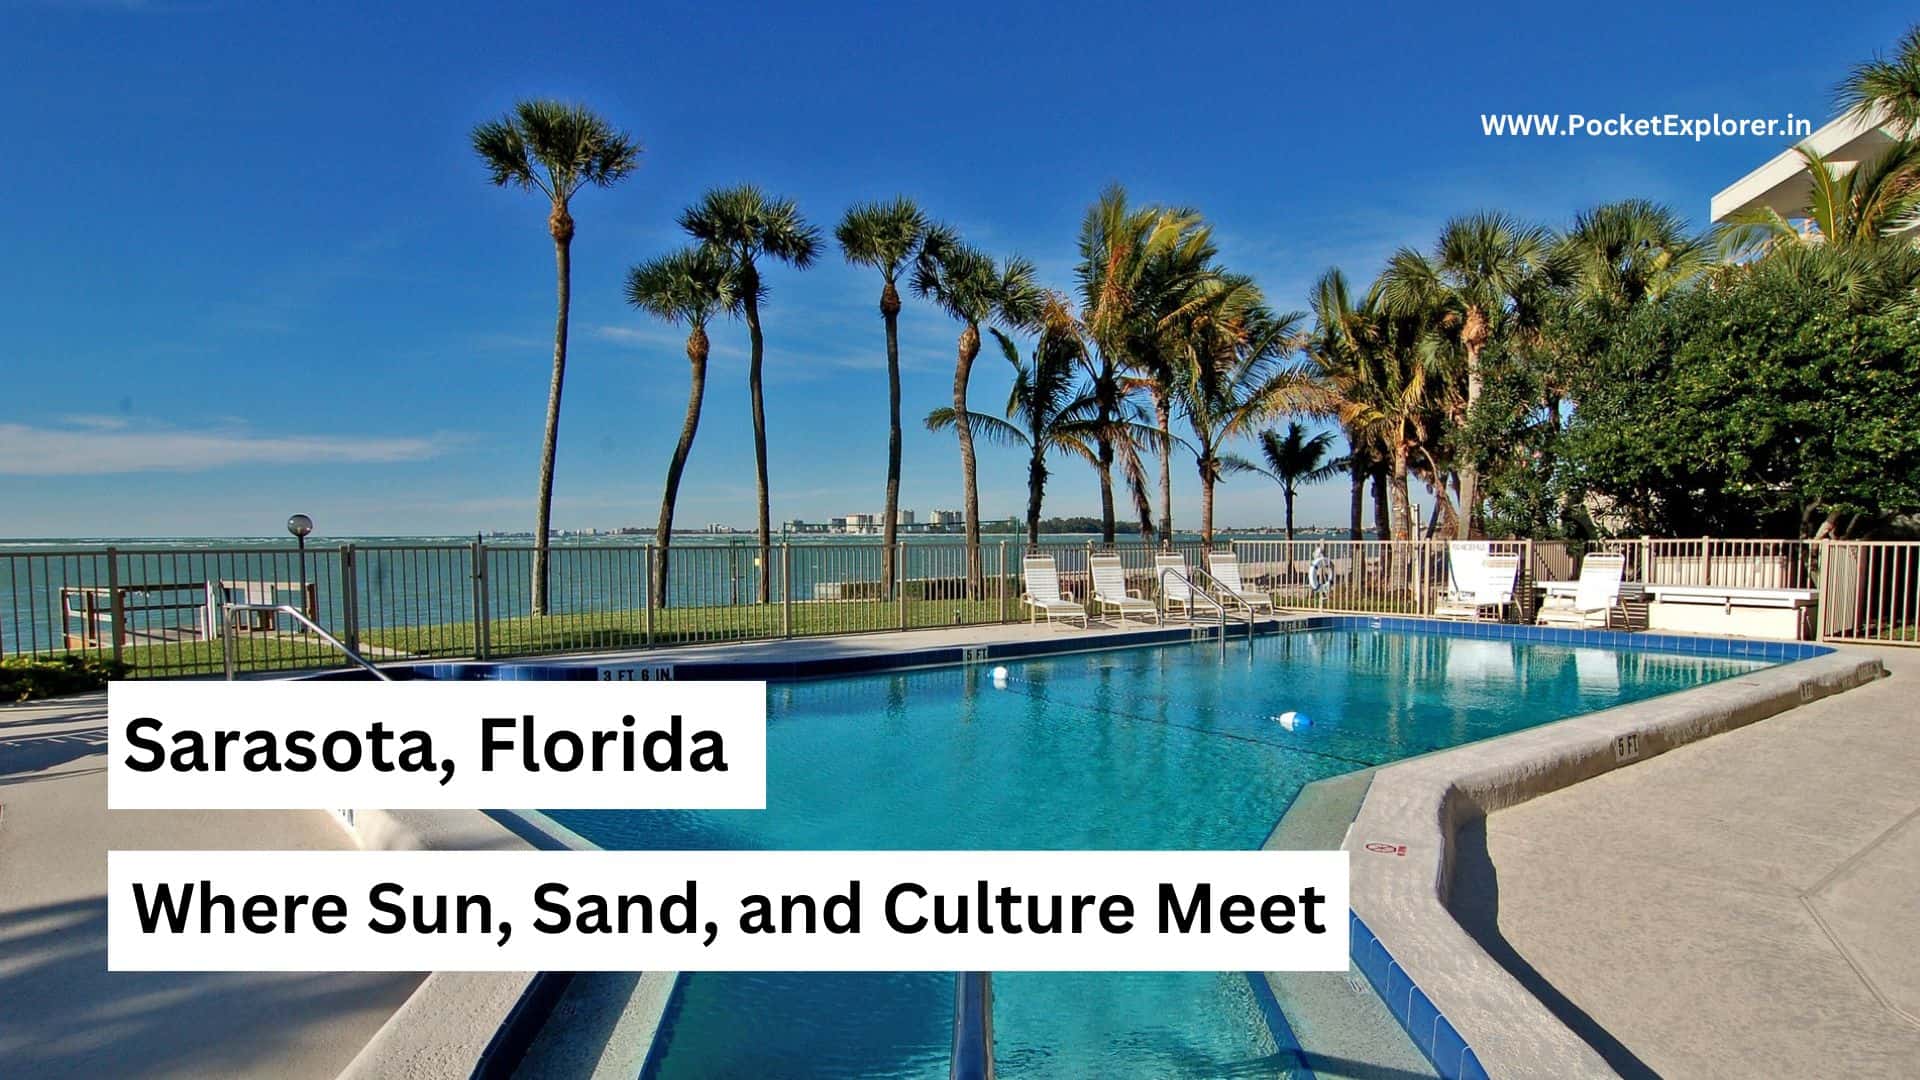 Sarasota, Florida: Where Sun, Sand, and Culture Meet